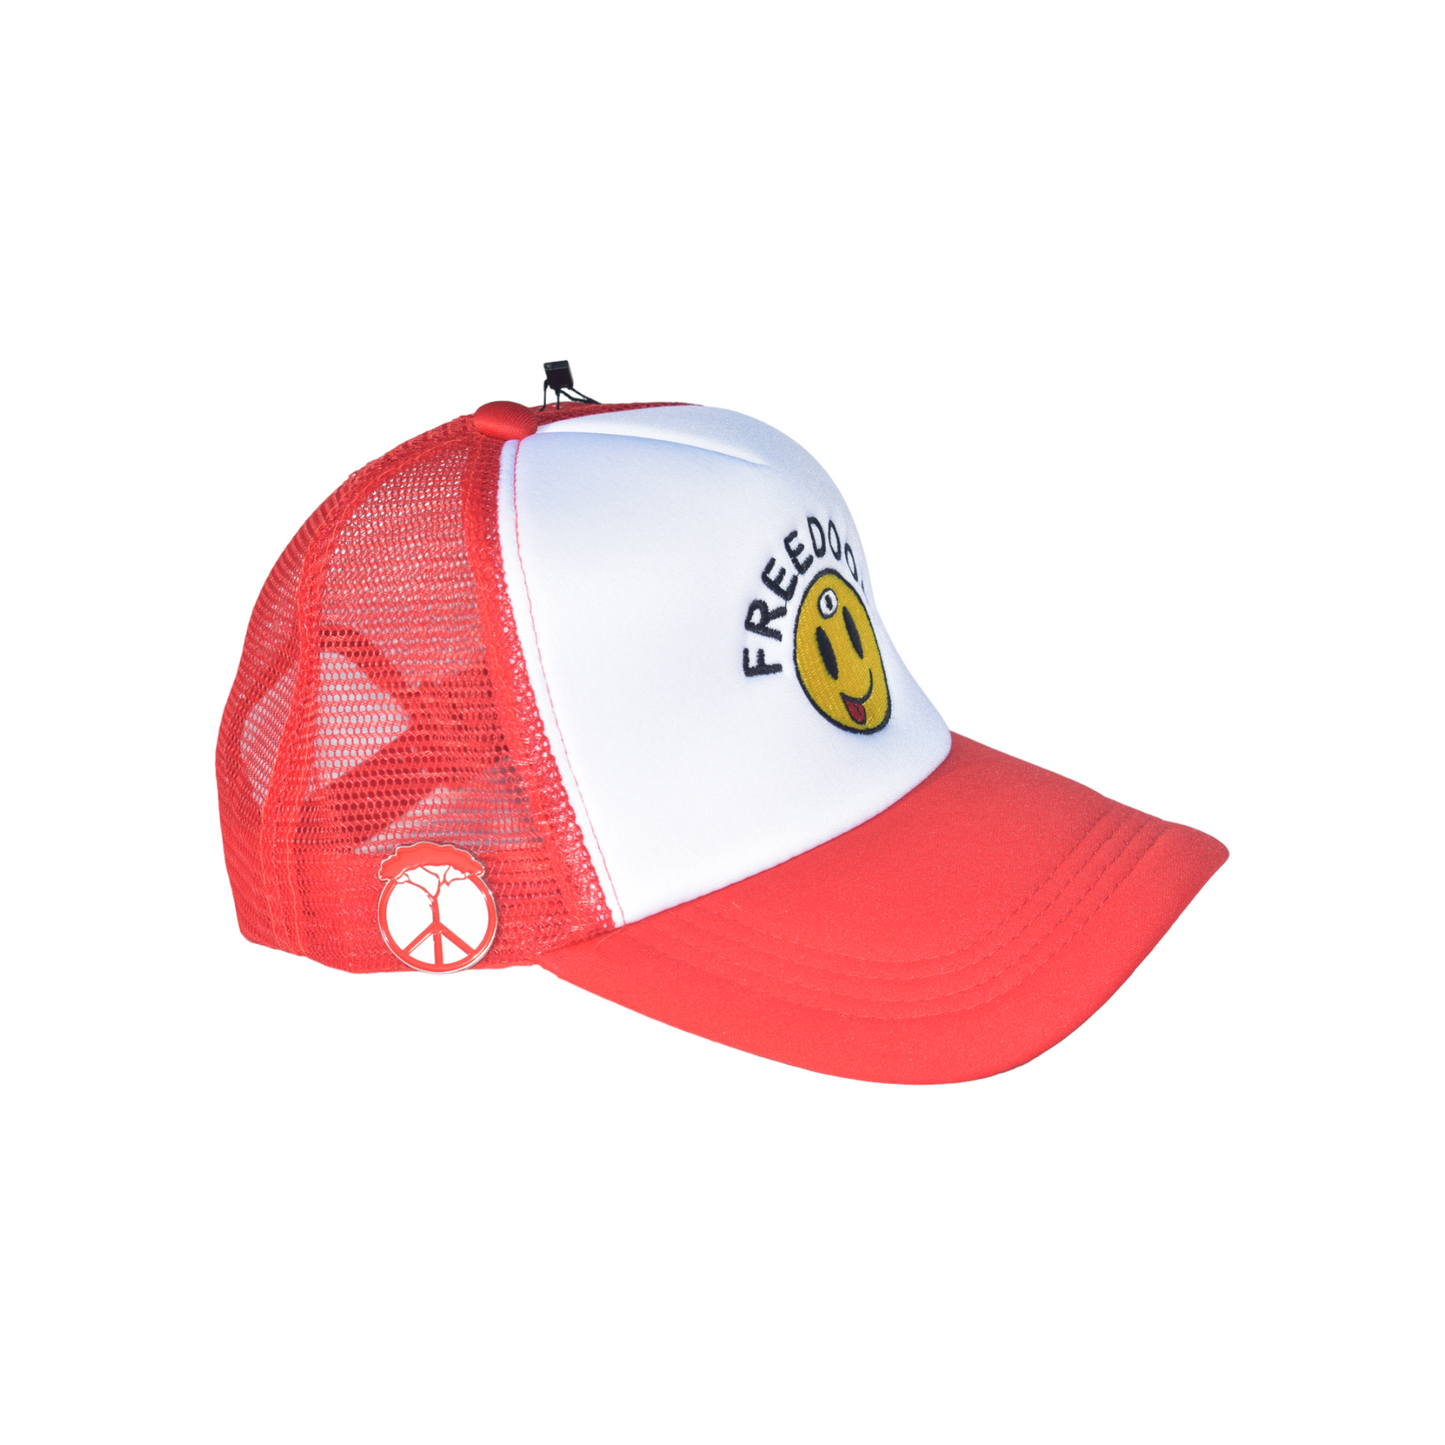 3rd Eye Smile Trucker Hat - Red/White